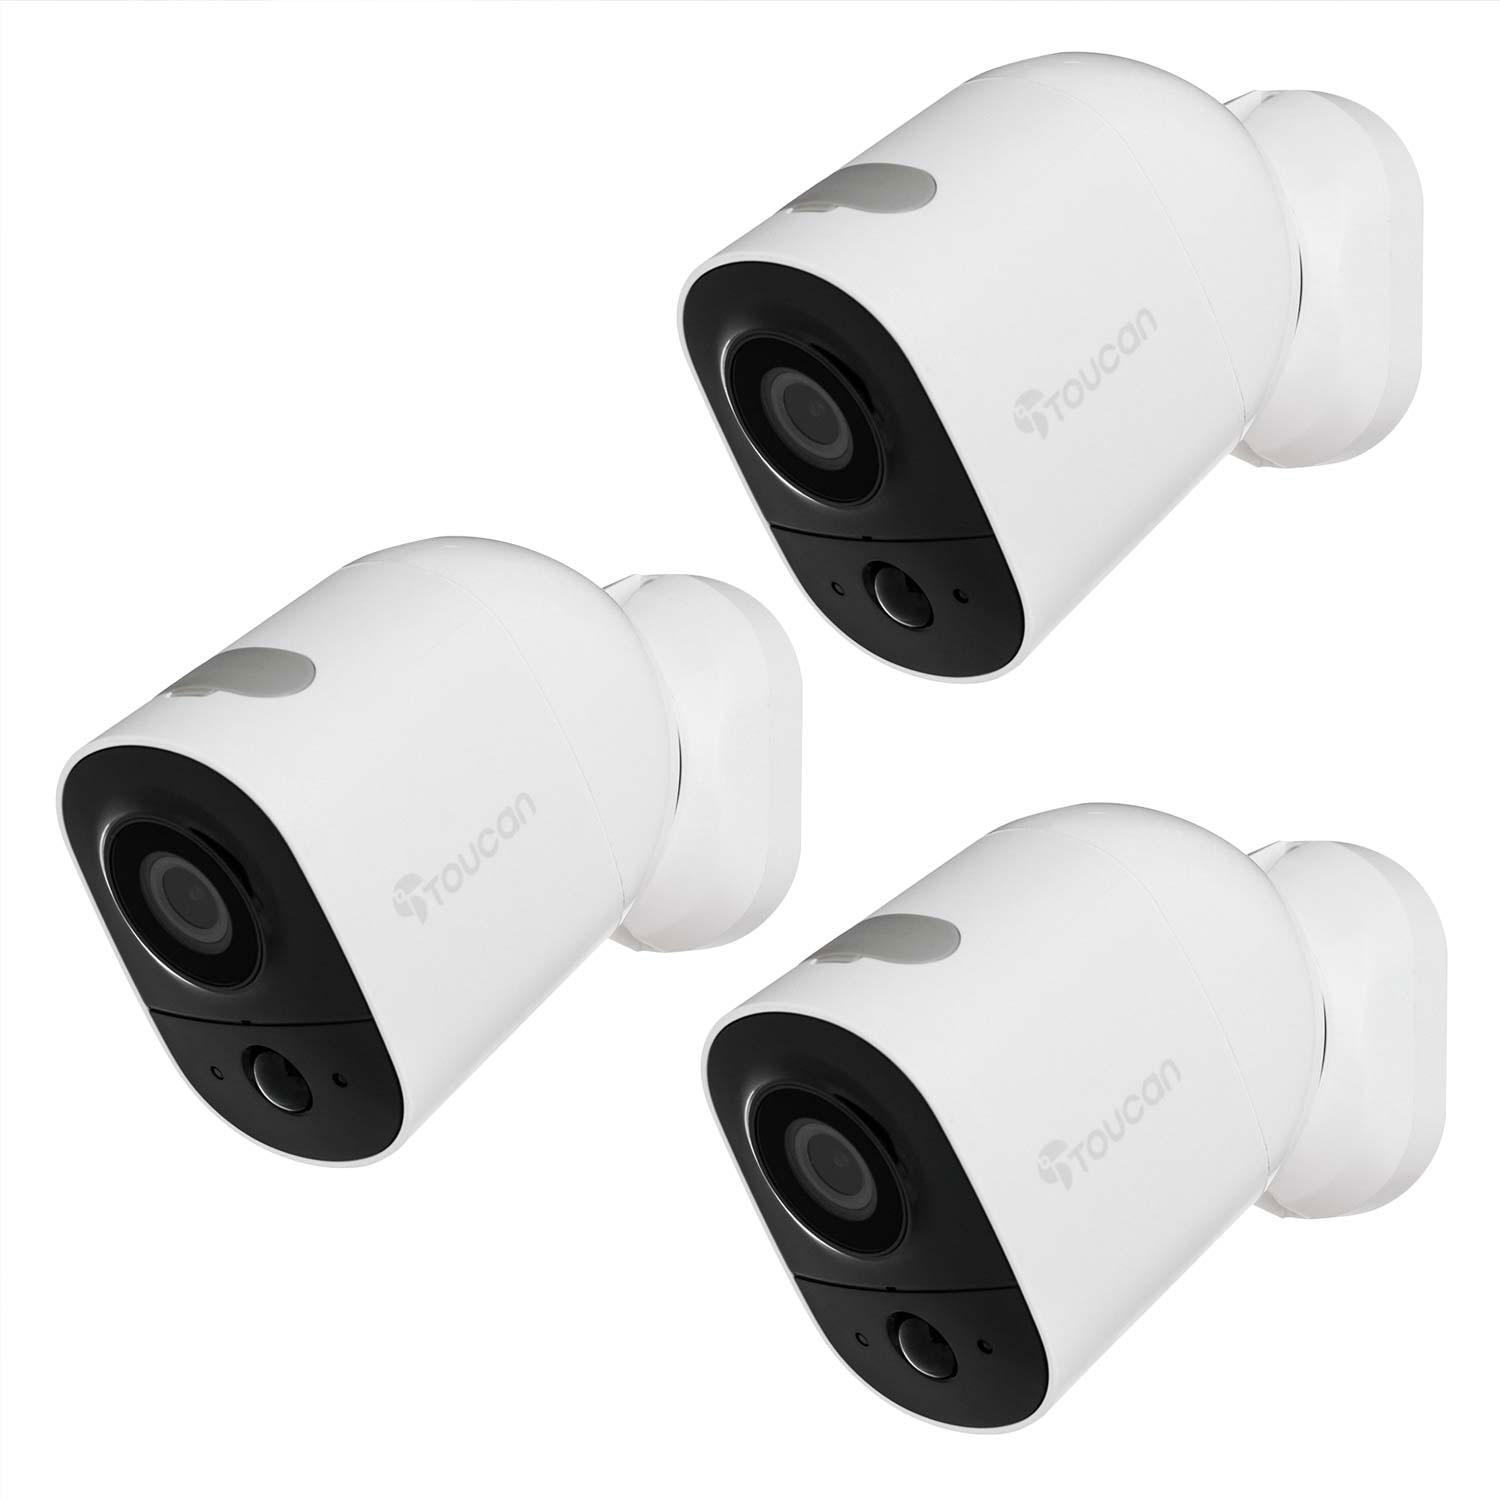 Toucan Wireless Outdoor/Indoor Security Camera Surveillance Set – 3-Pack